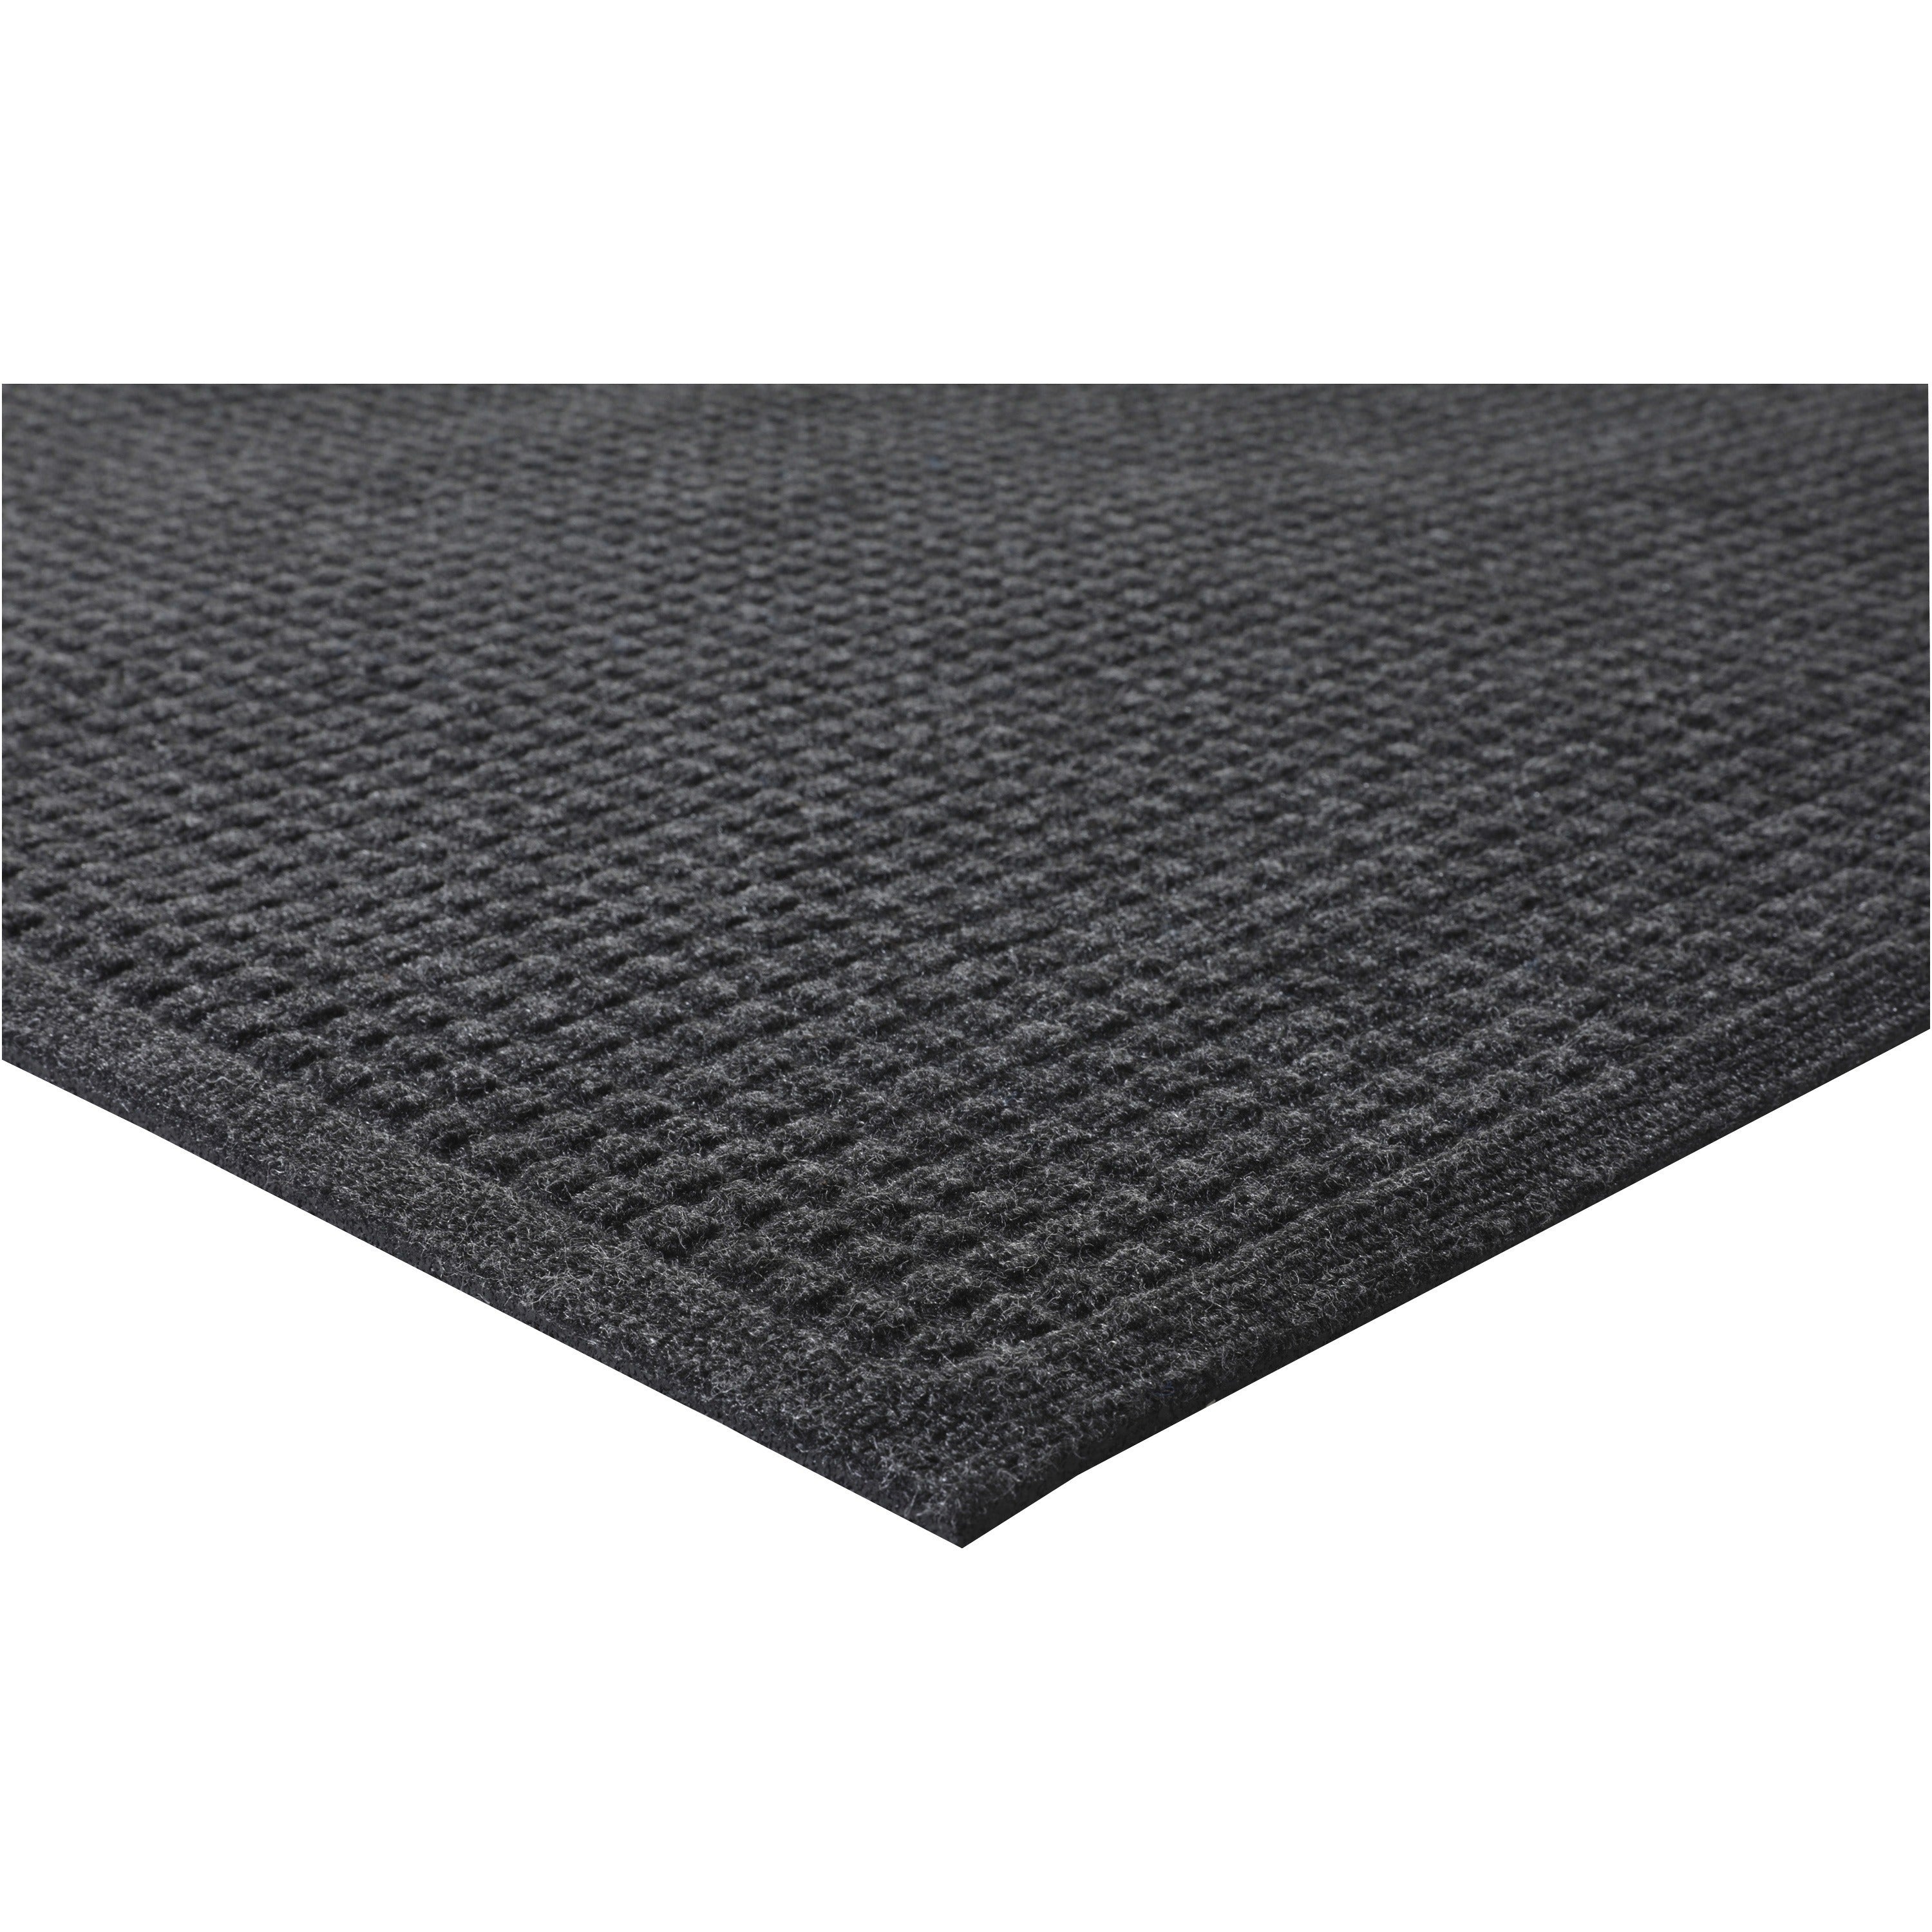 Genuine Joe EcoGuard Indoor Wiper Floor Mats - Indoor - 72" Length x 48" Width - Plastic, Rubber - Charcoal Gray - 1Each - 